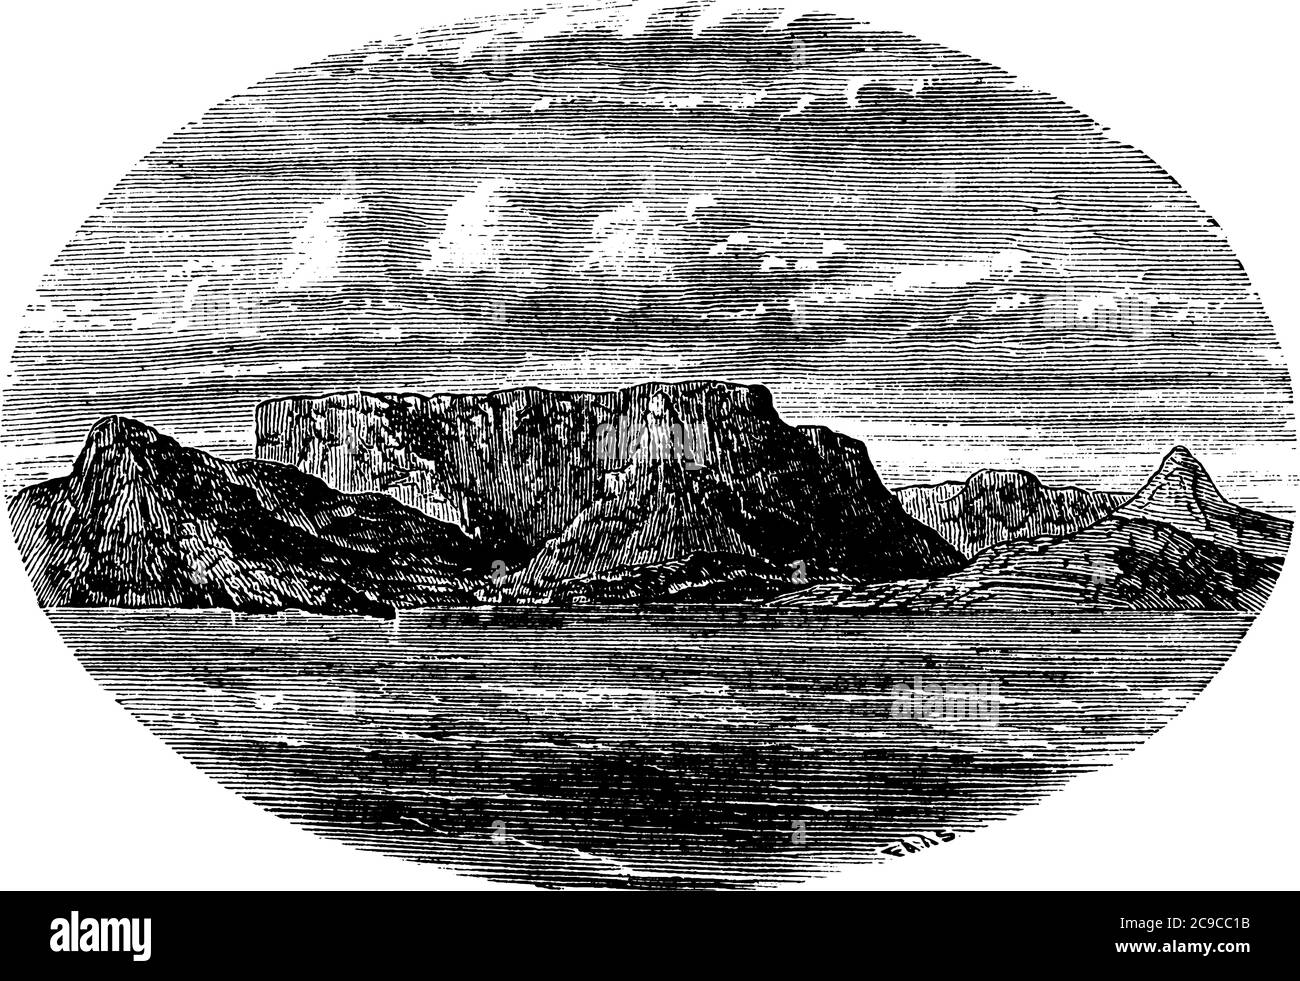 La montagne de table est une montagne en Afrique du Sud ayant la forme de la table et de la mer autour, dessin de ligne d'époque ou illustration de gravure. Illustration de Vecteur